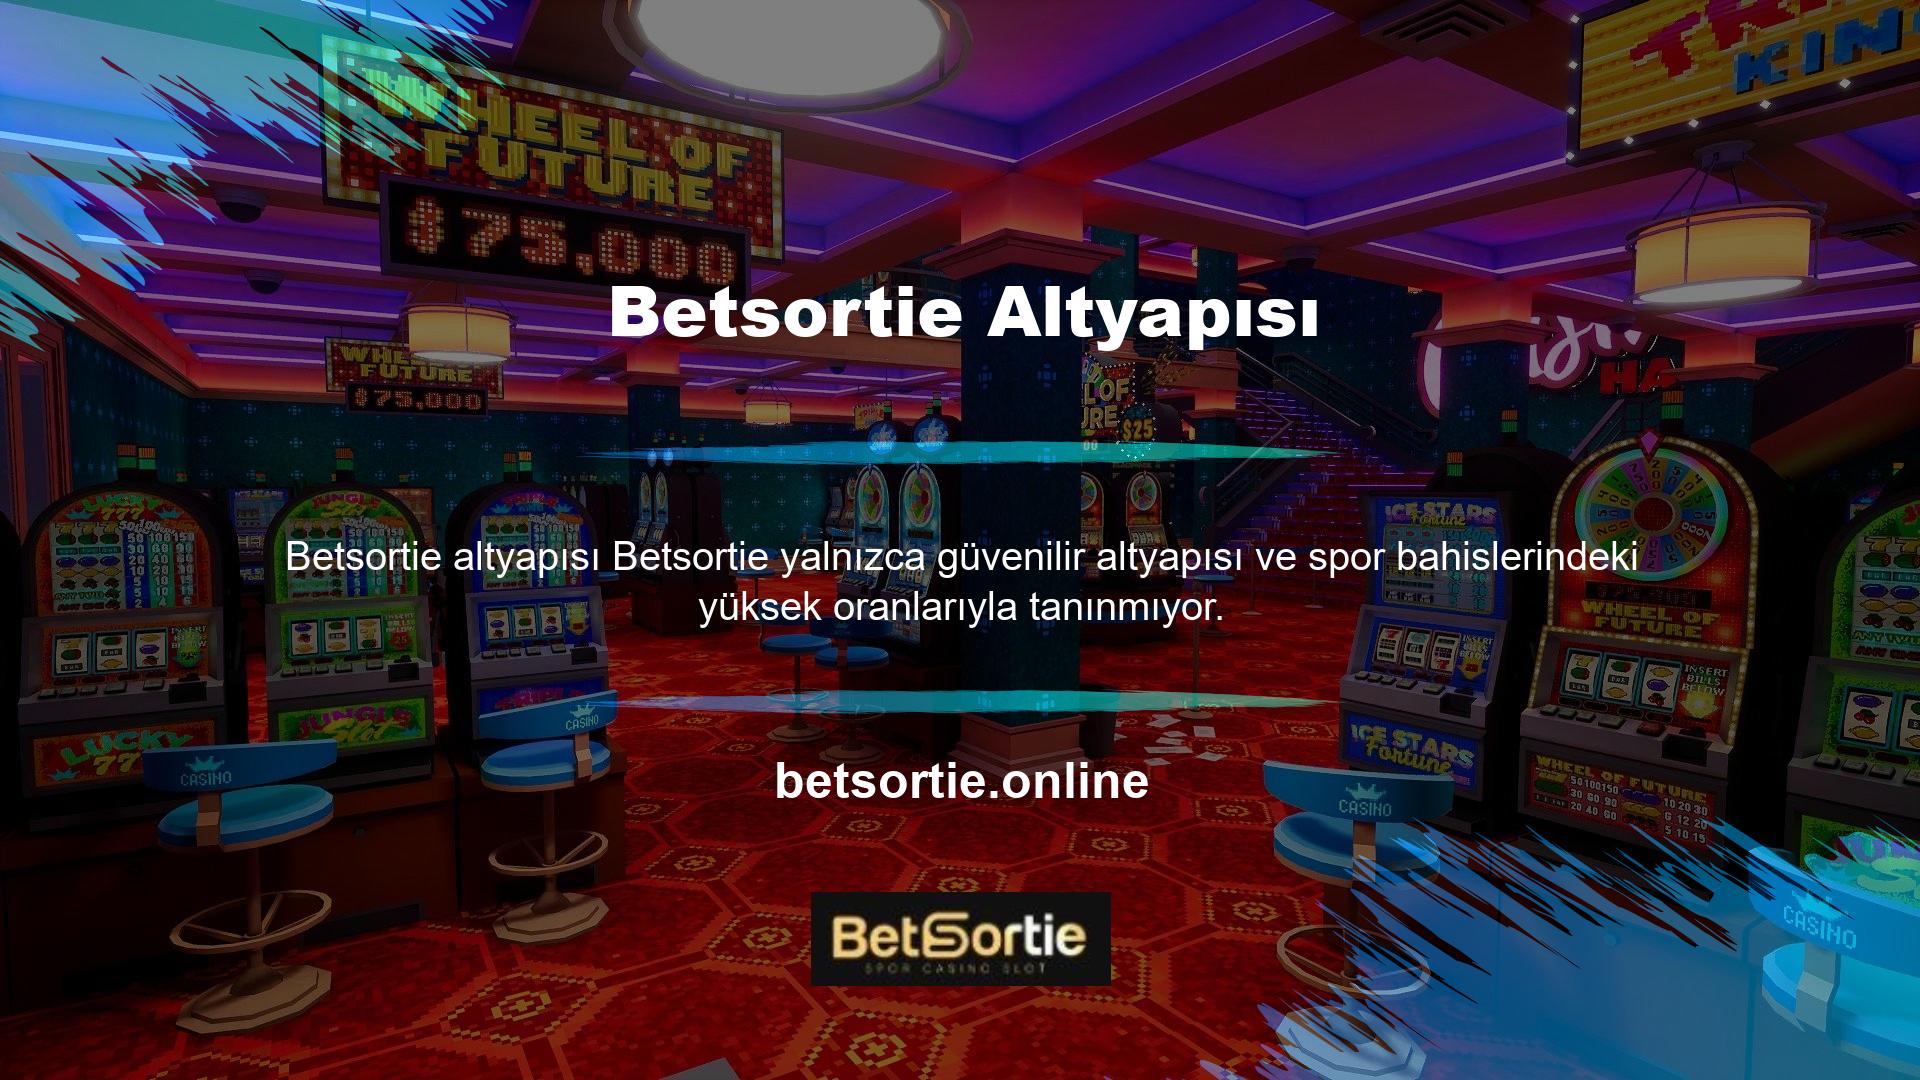 Efsanevi bonuslar da bahis ve casino meraklıları arasında Betsortie popülaritesine katkıda bulunan bir faktördür